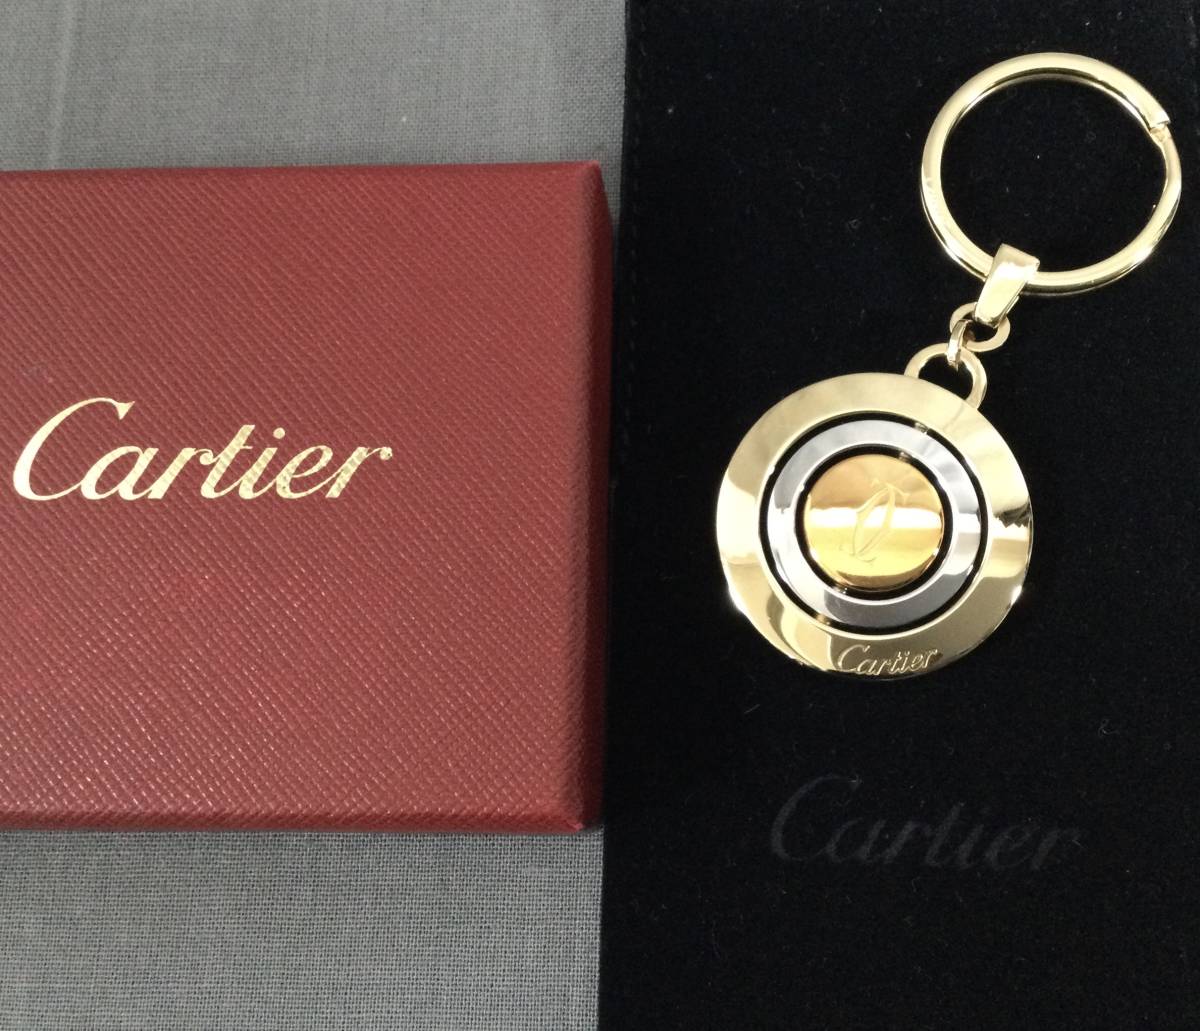 Cartier キーホルダー